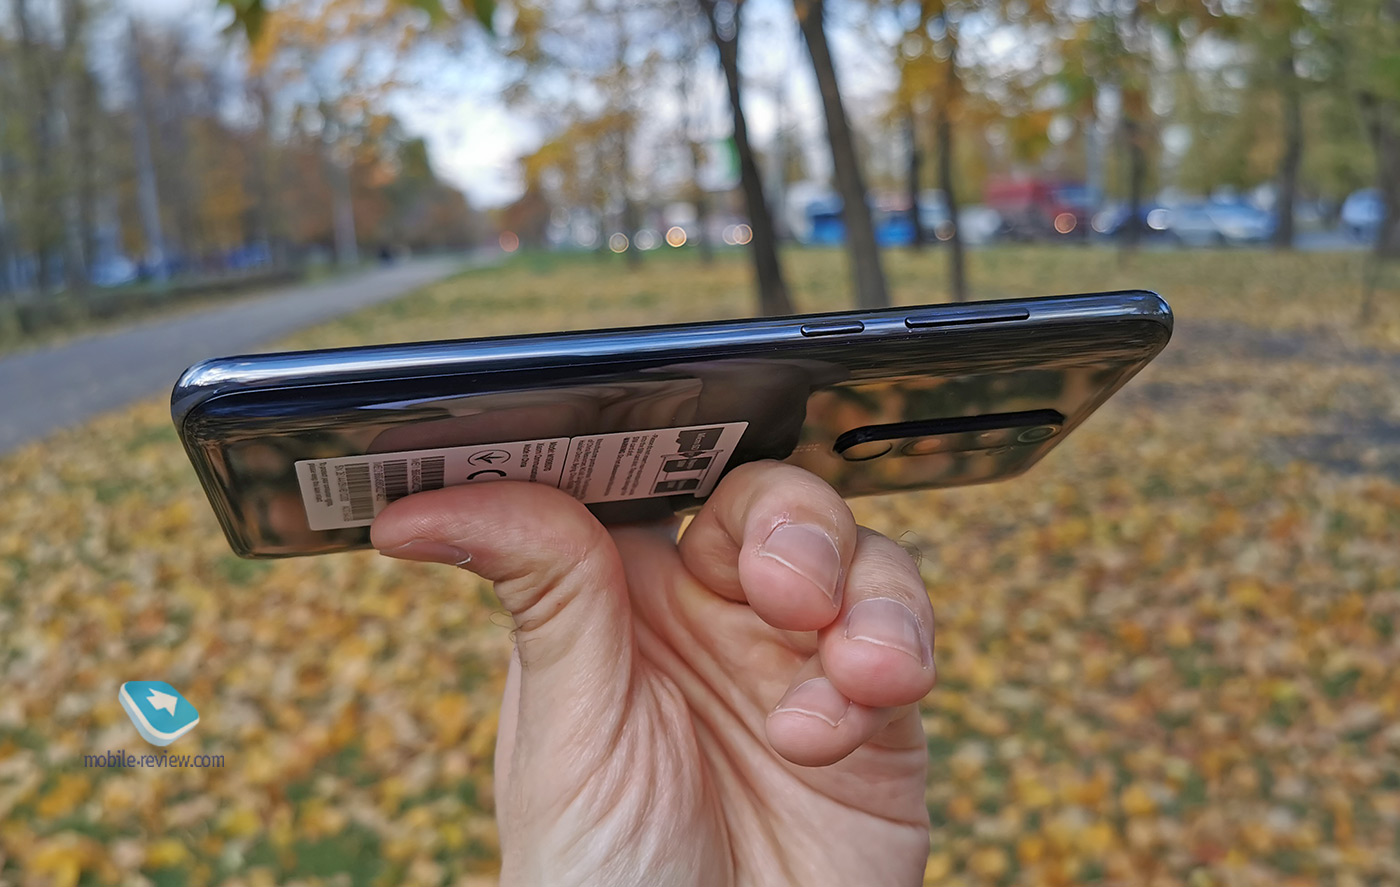 Что крутого в Xiaomi Redmi Note 8 Pro?